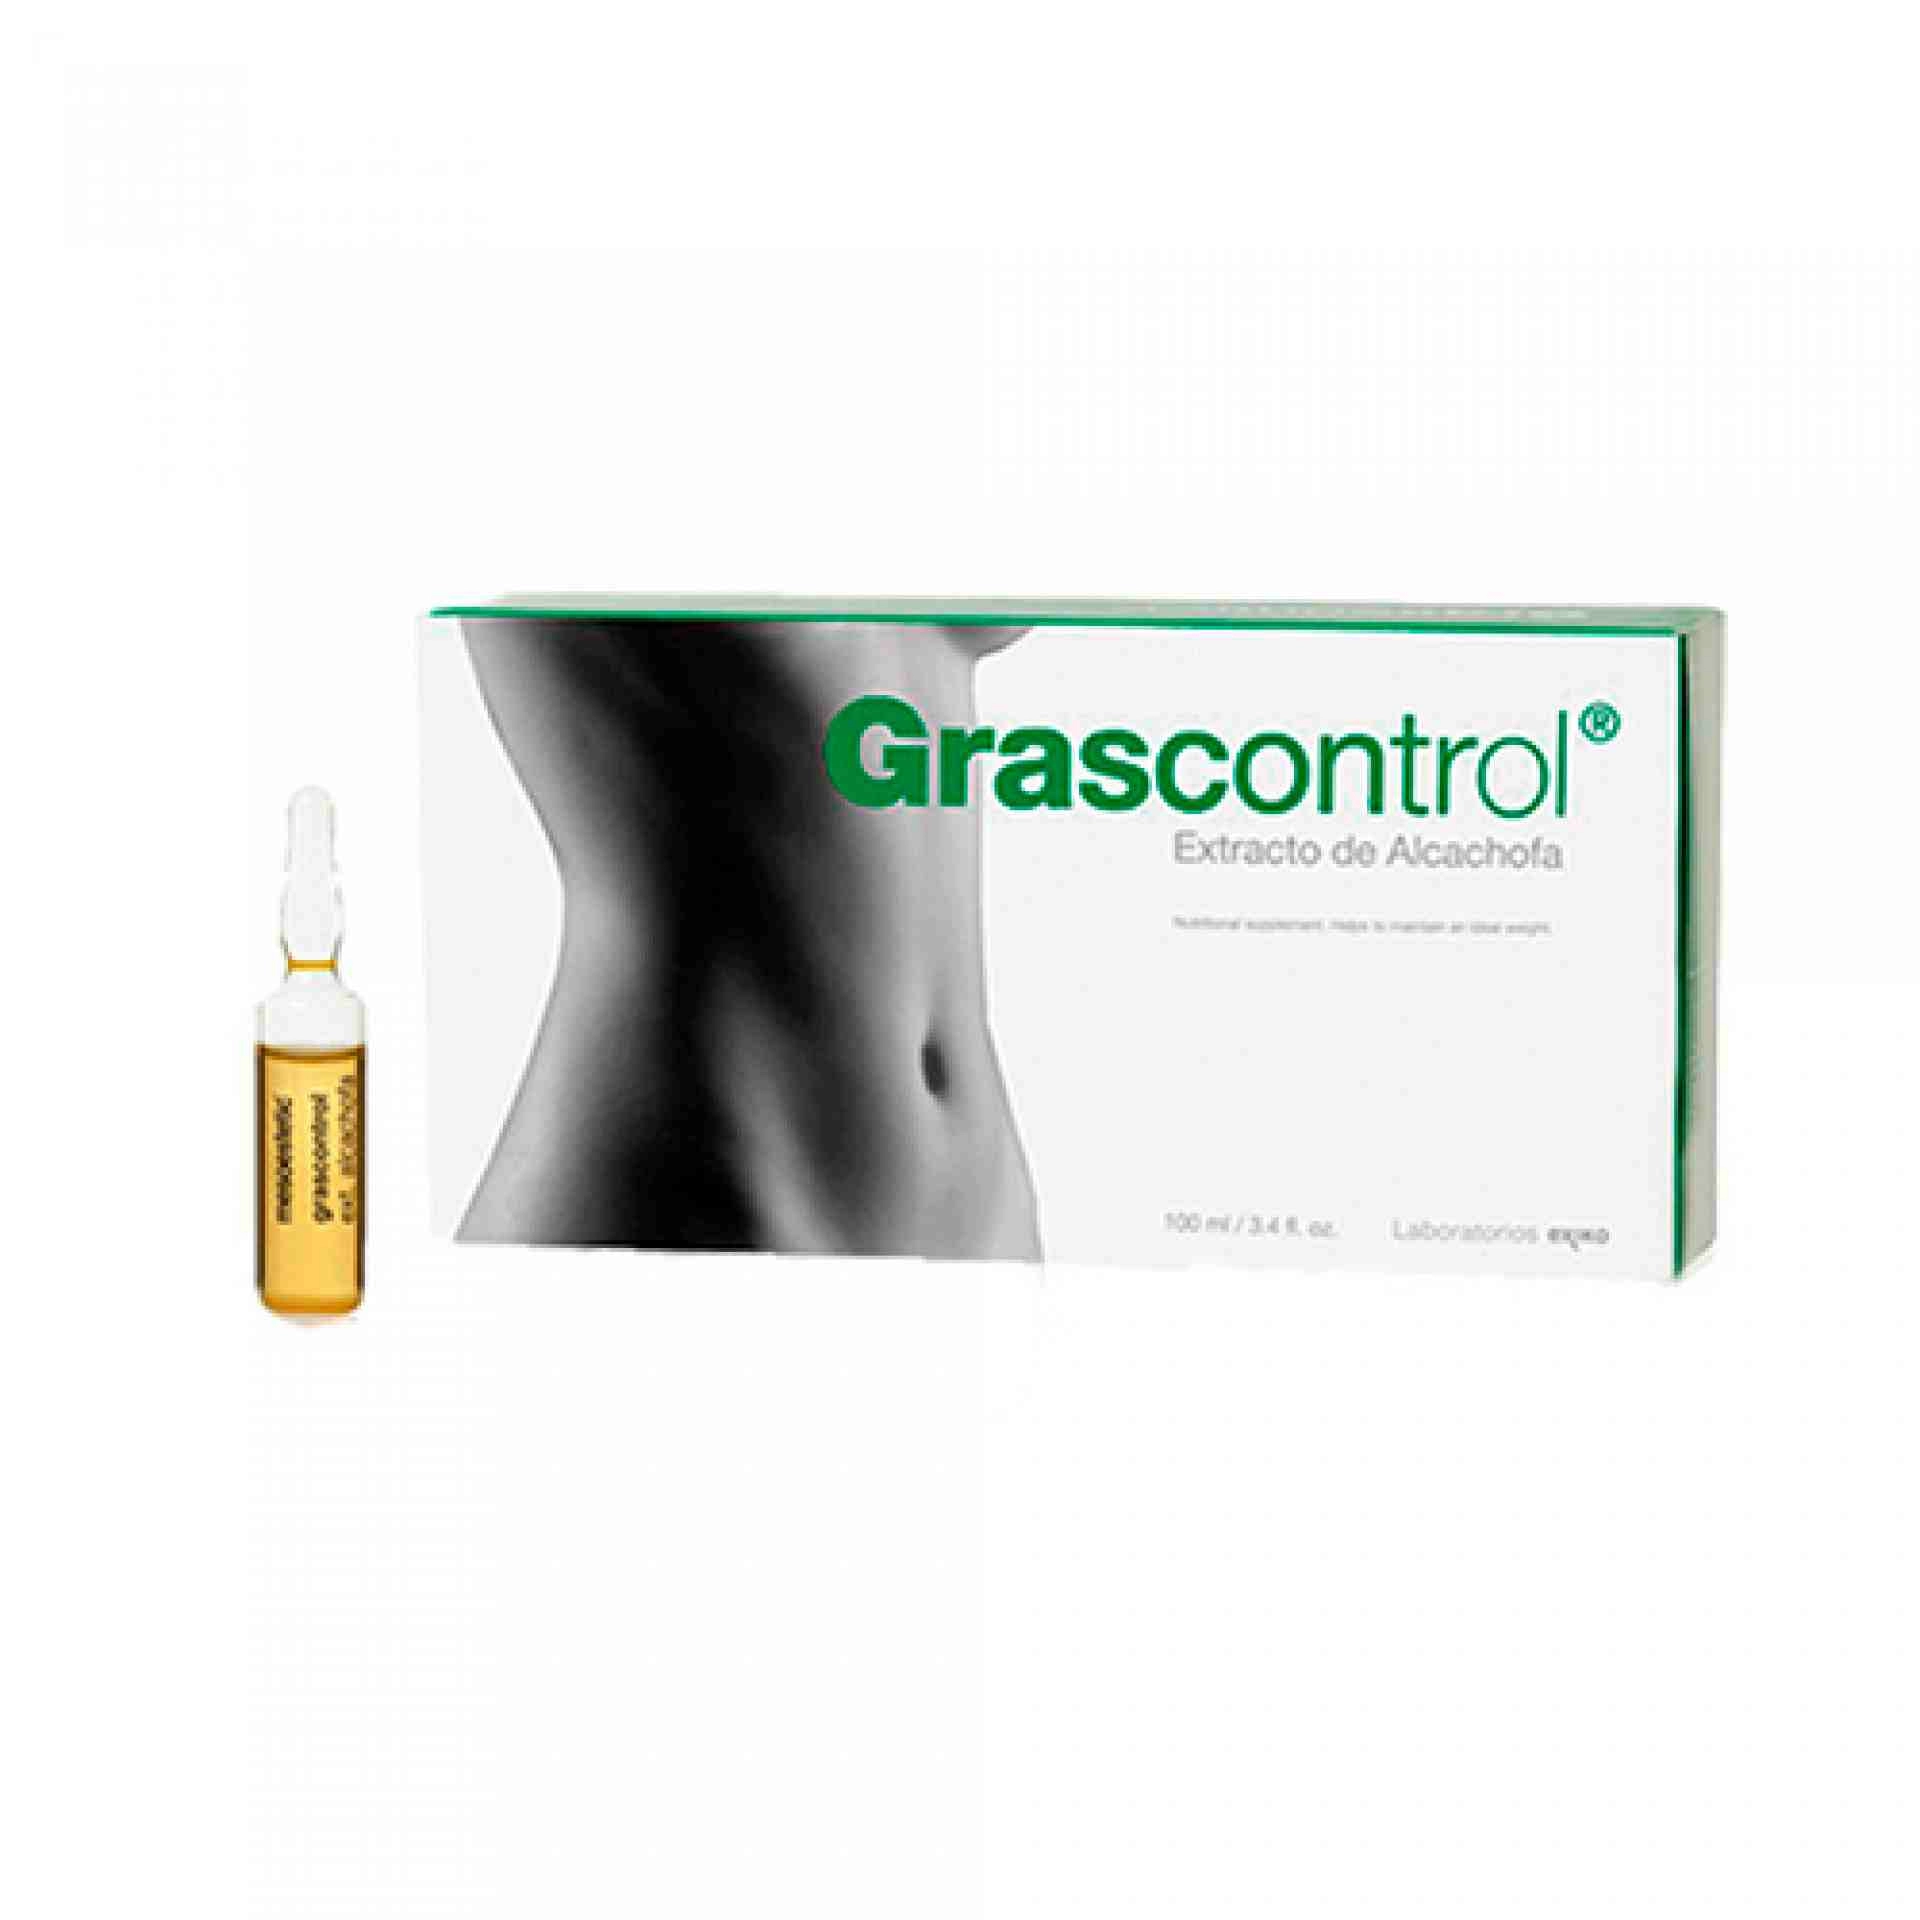 Extracto de Alcachofa | Ampollas 20x5ml - Grascontrol - Mesoestetic ®